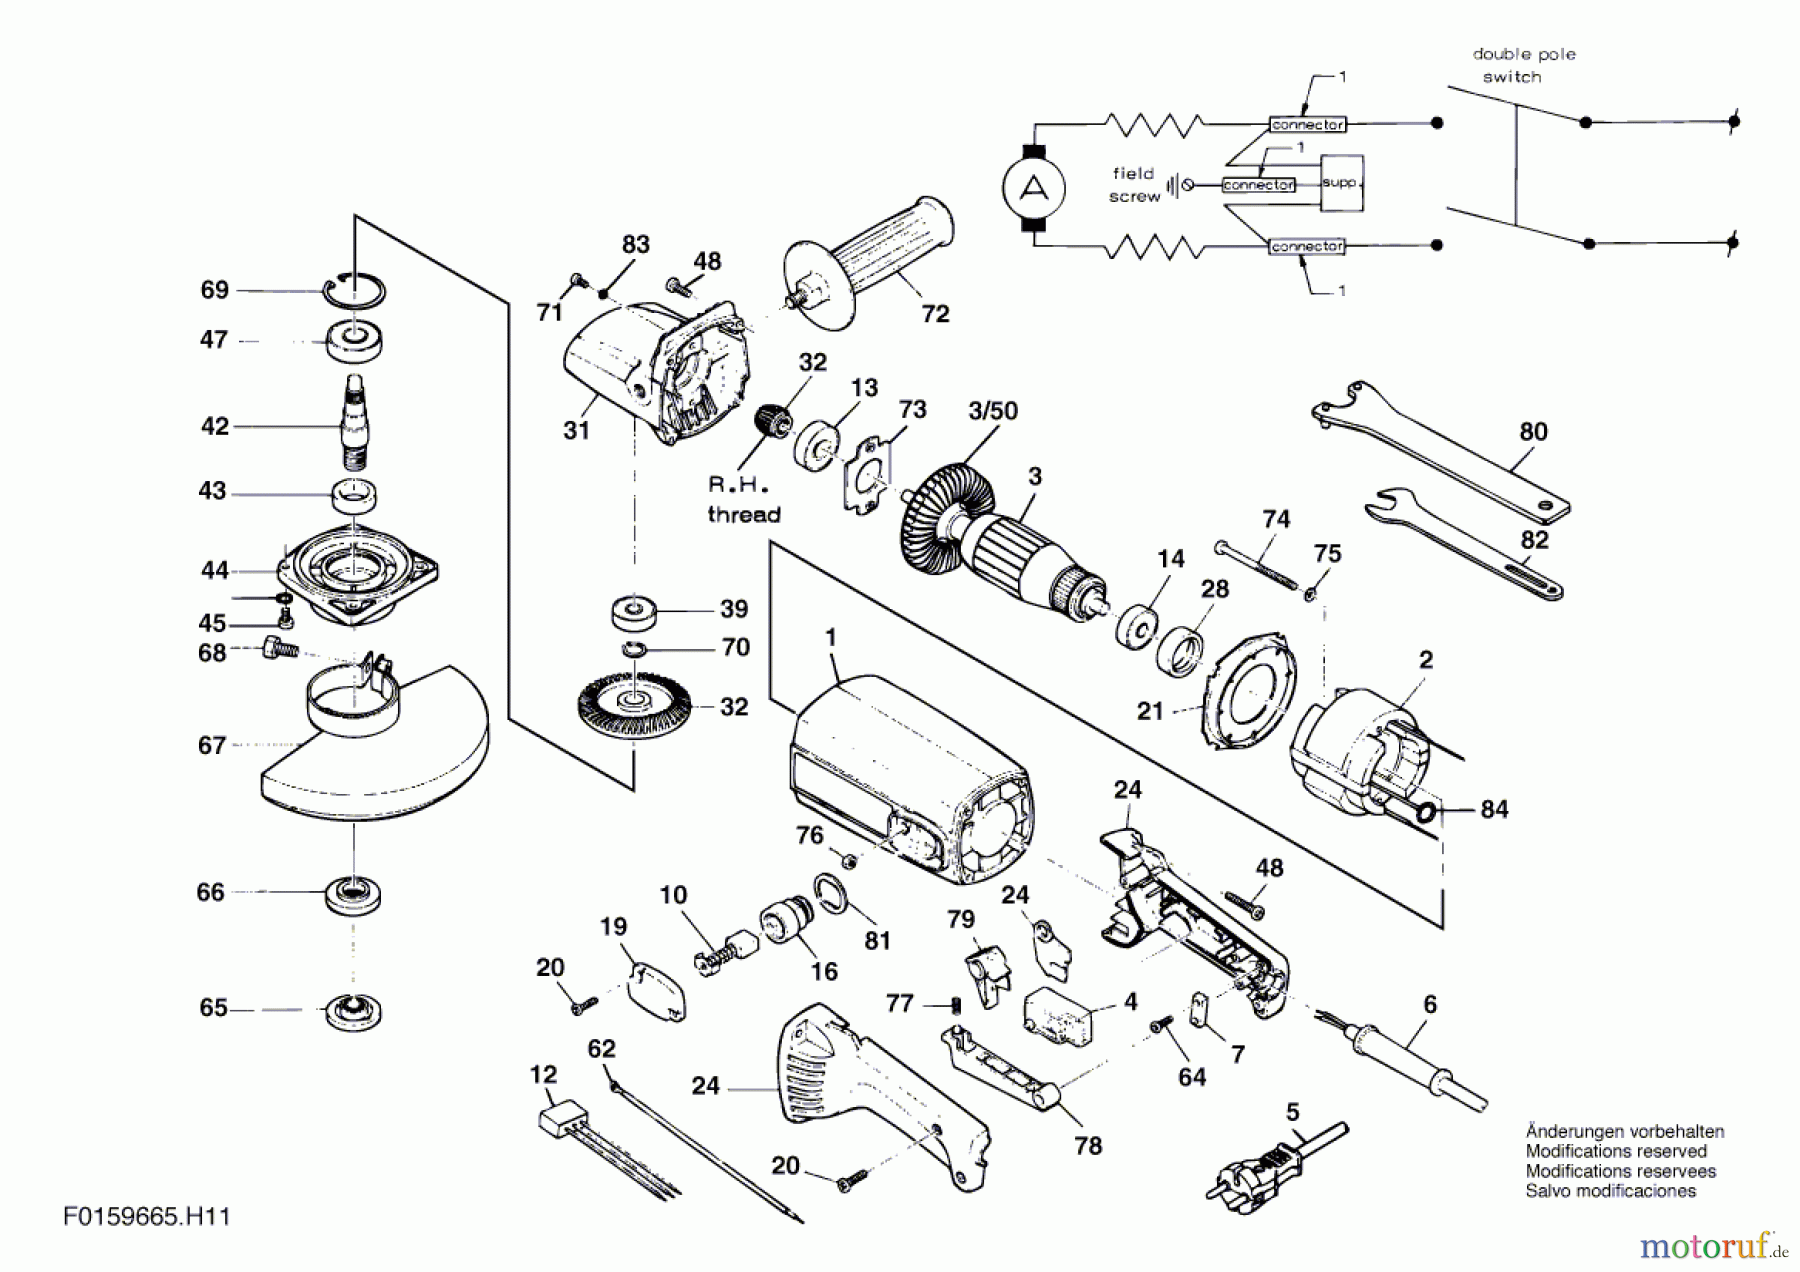  Bosch Werkzeug Winkelschleifer 9665 Seite 1